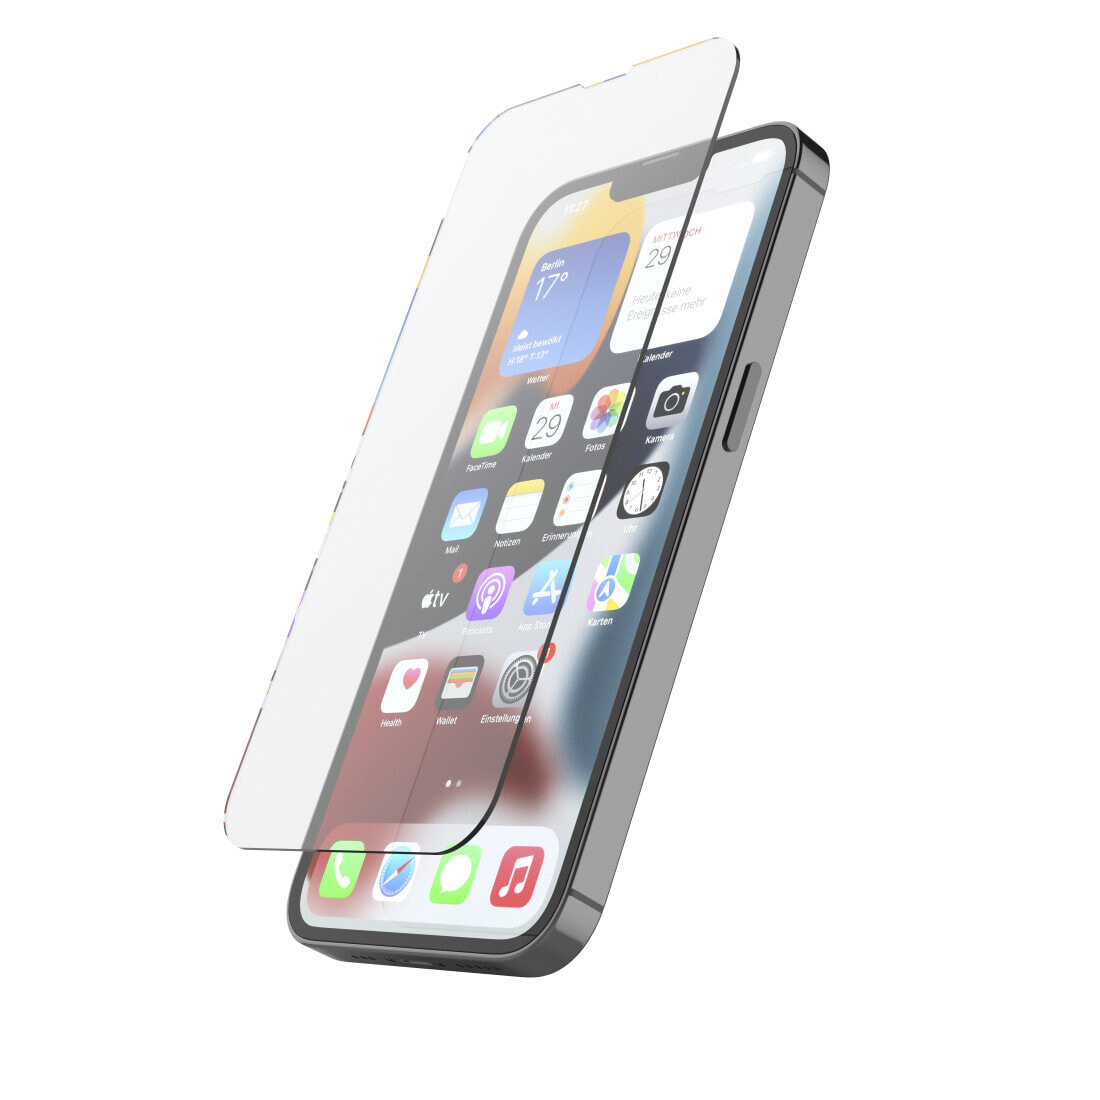 Hama 00216351 защитная пленка / стекло для мобильного телефона Прозрачная защитная пленка Apple 1 шт